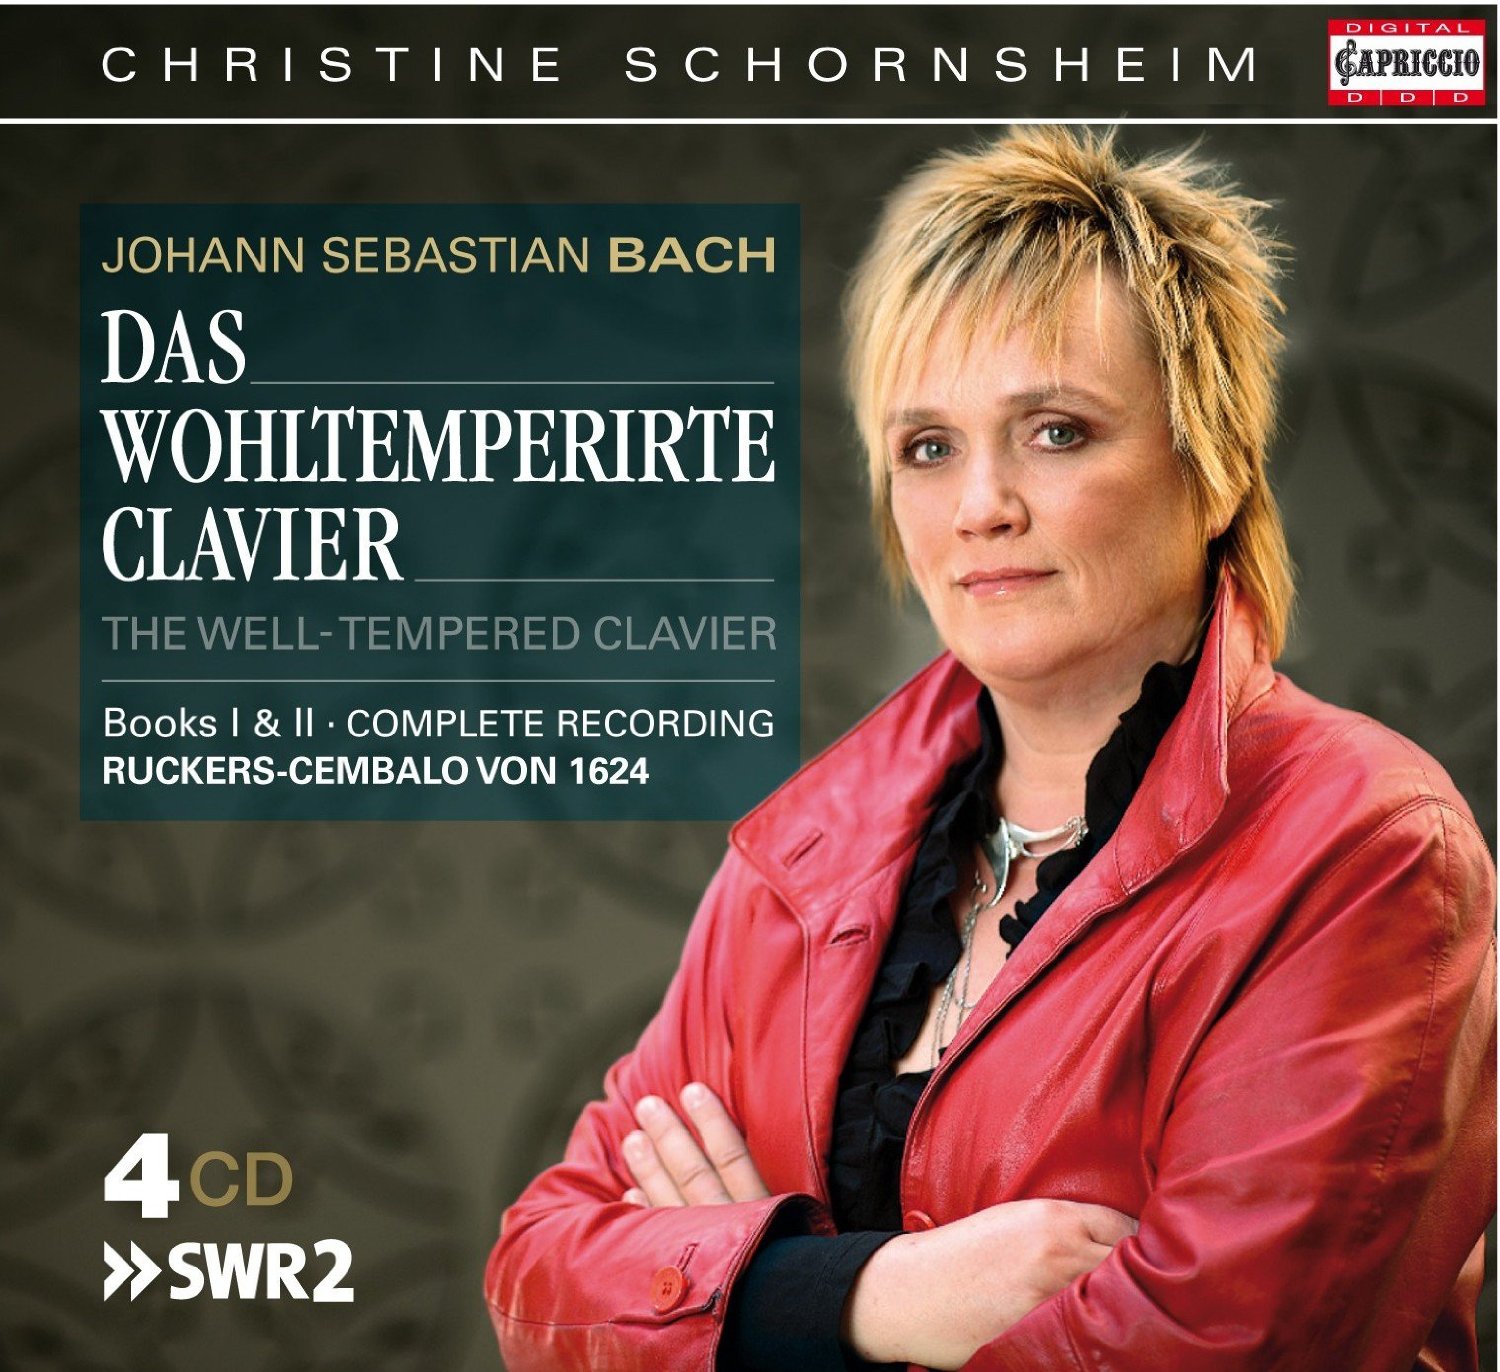 Audio Cd Johann Sebastian Bach - The Well-Tempered Clavier Books I & II (4 Cd) NUOVO SIGILLATO, EDIZIONE DEL 27/04/2009 SUBITO DISPONIBILE